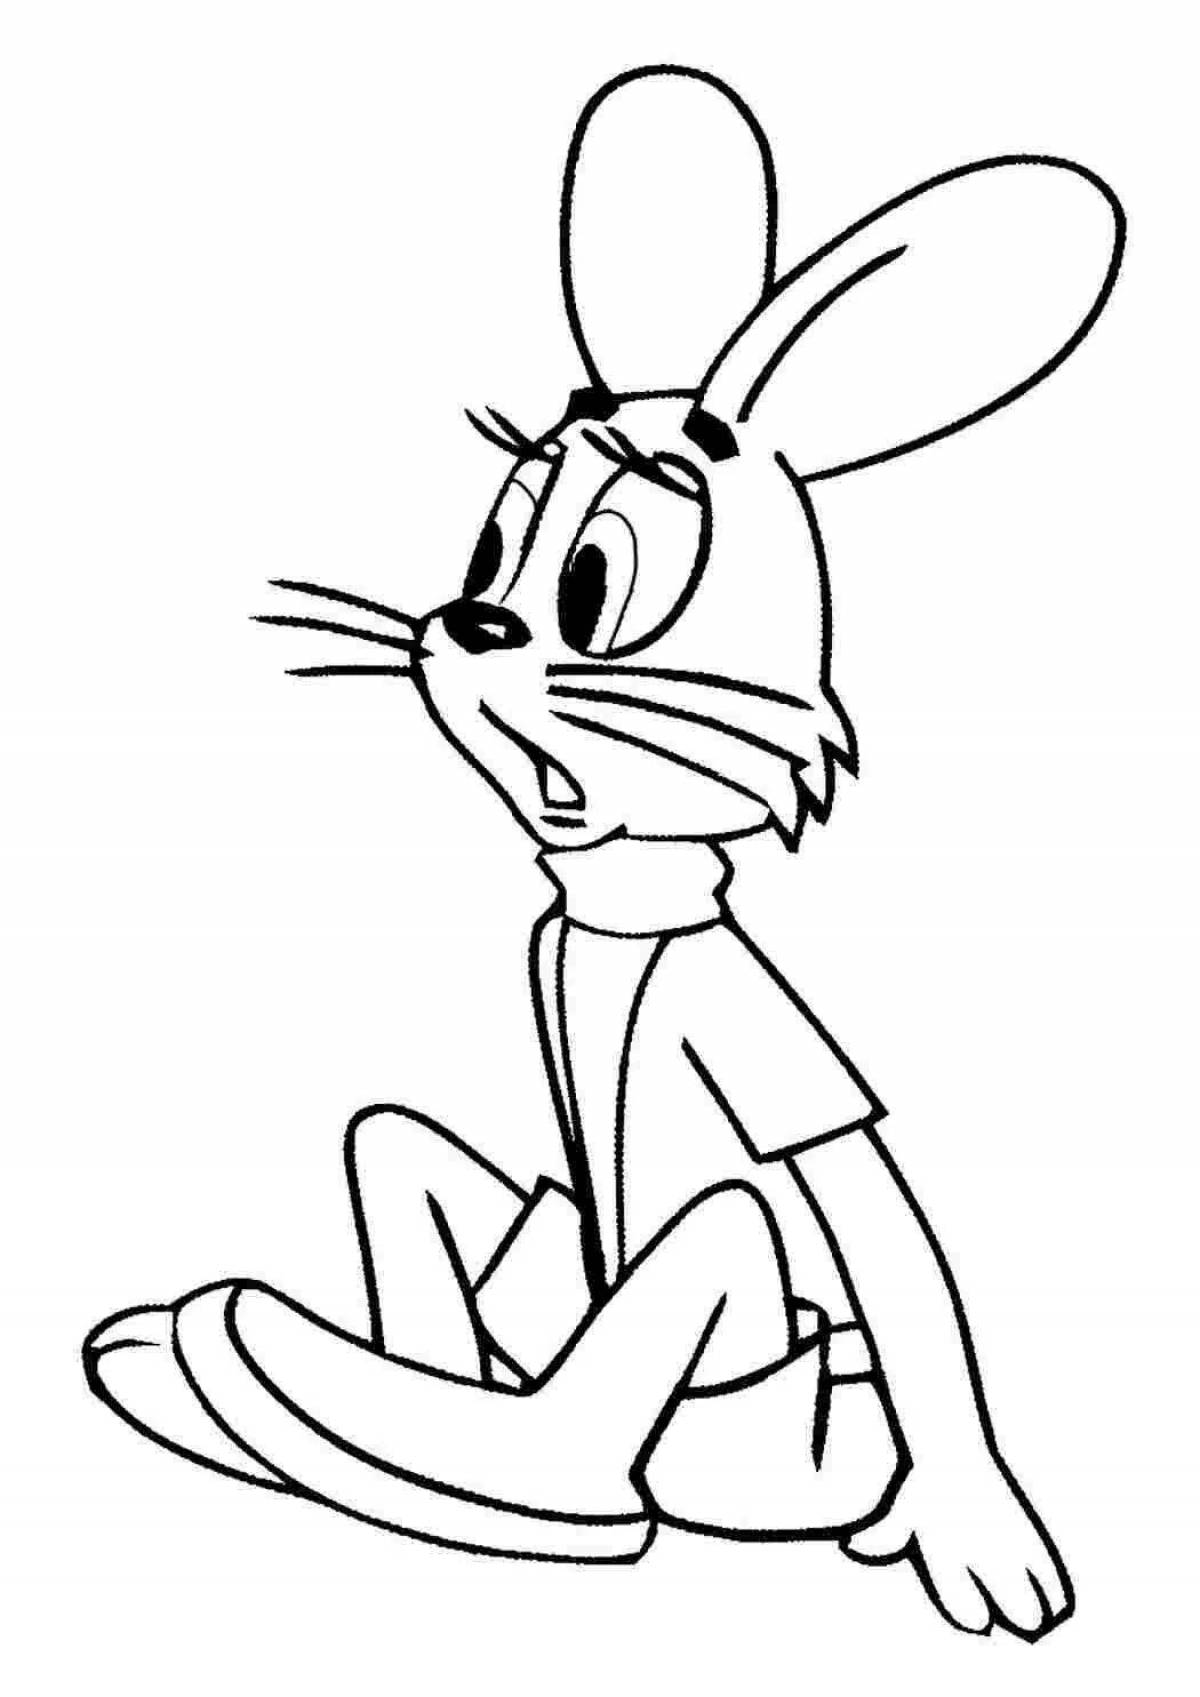 Coloring book happy cartoon hare